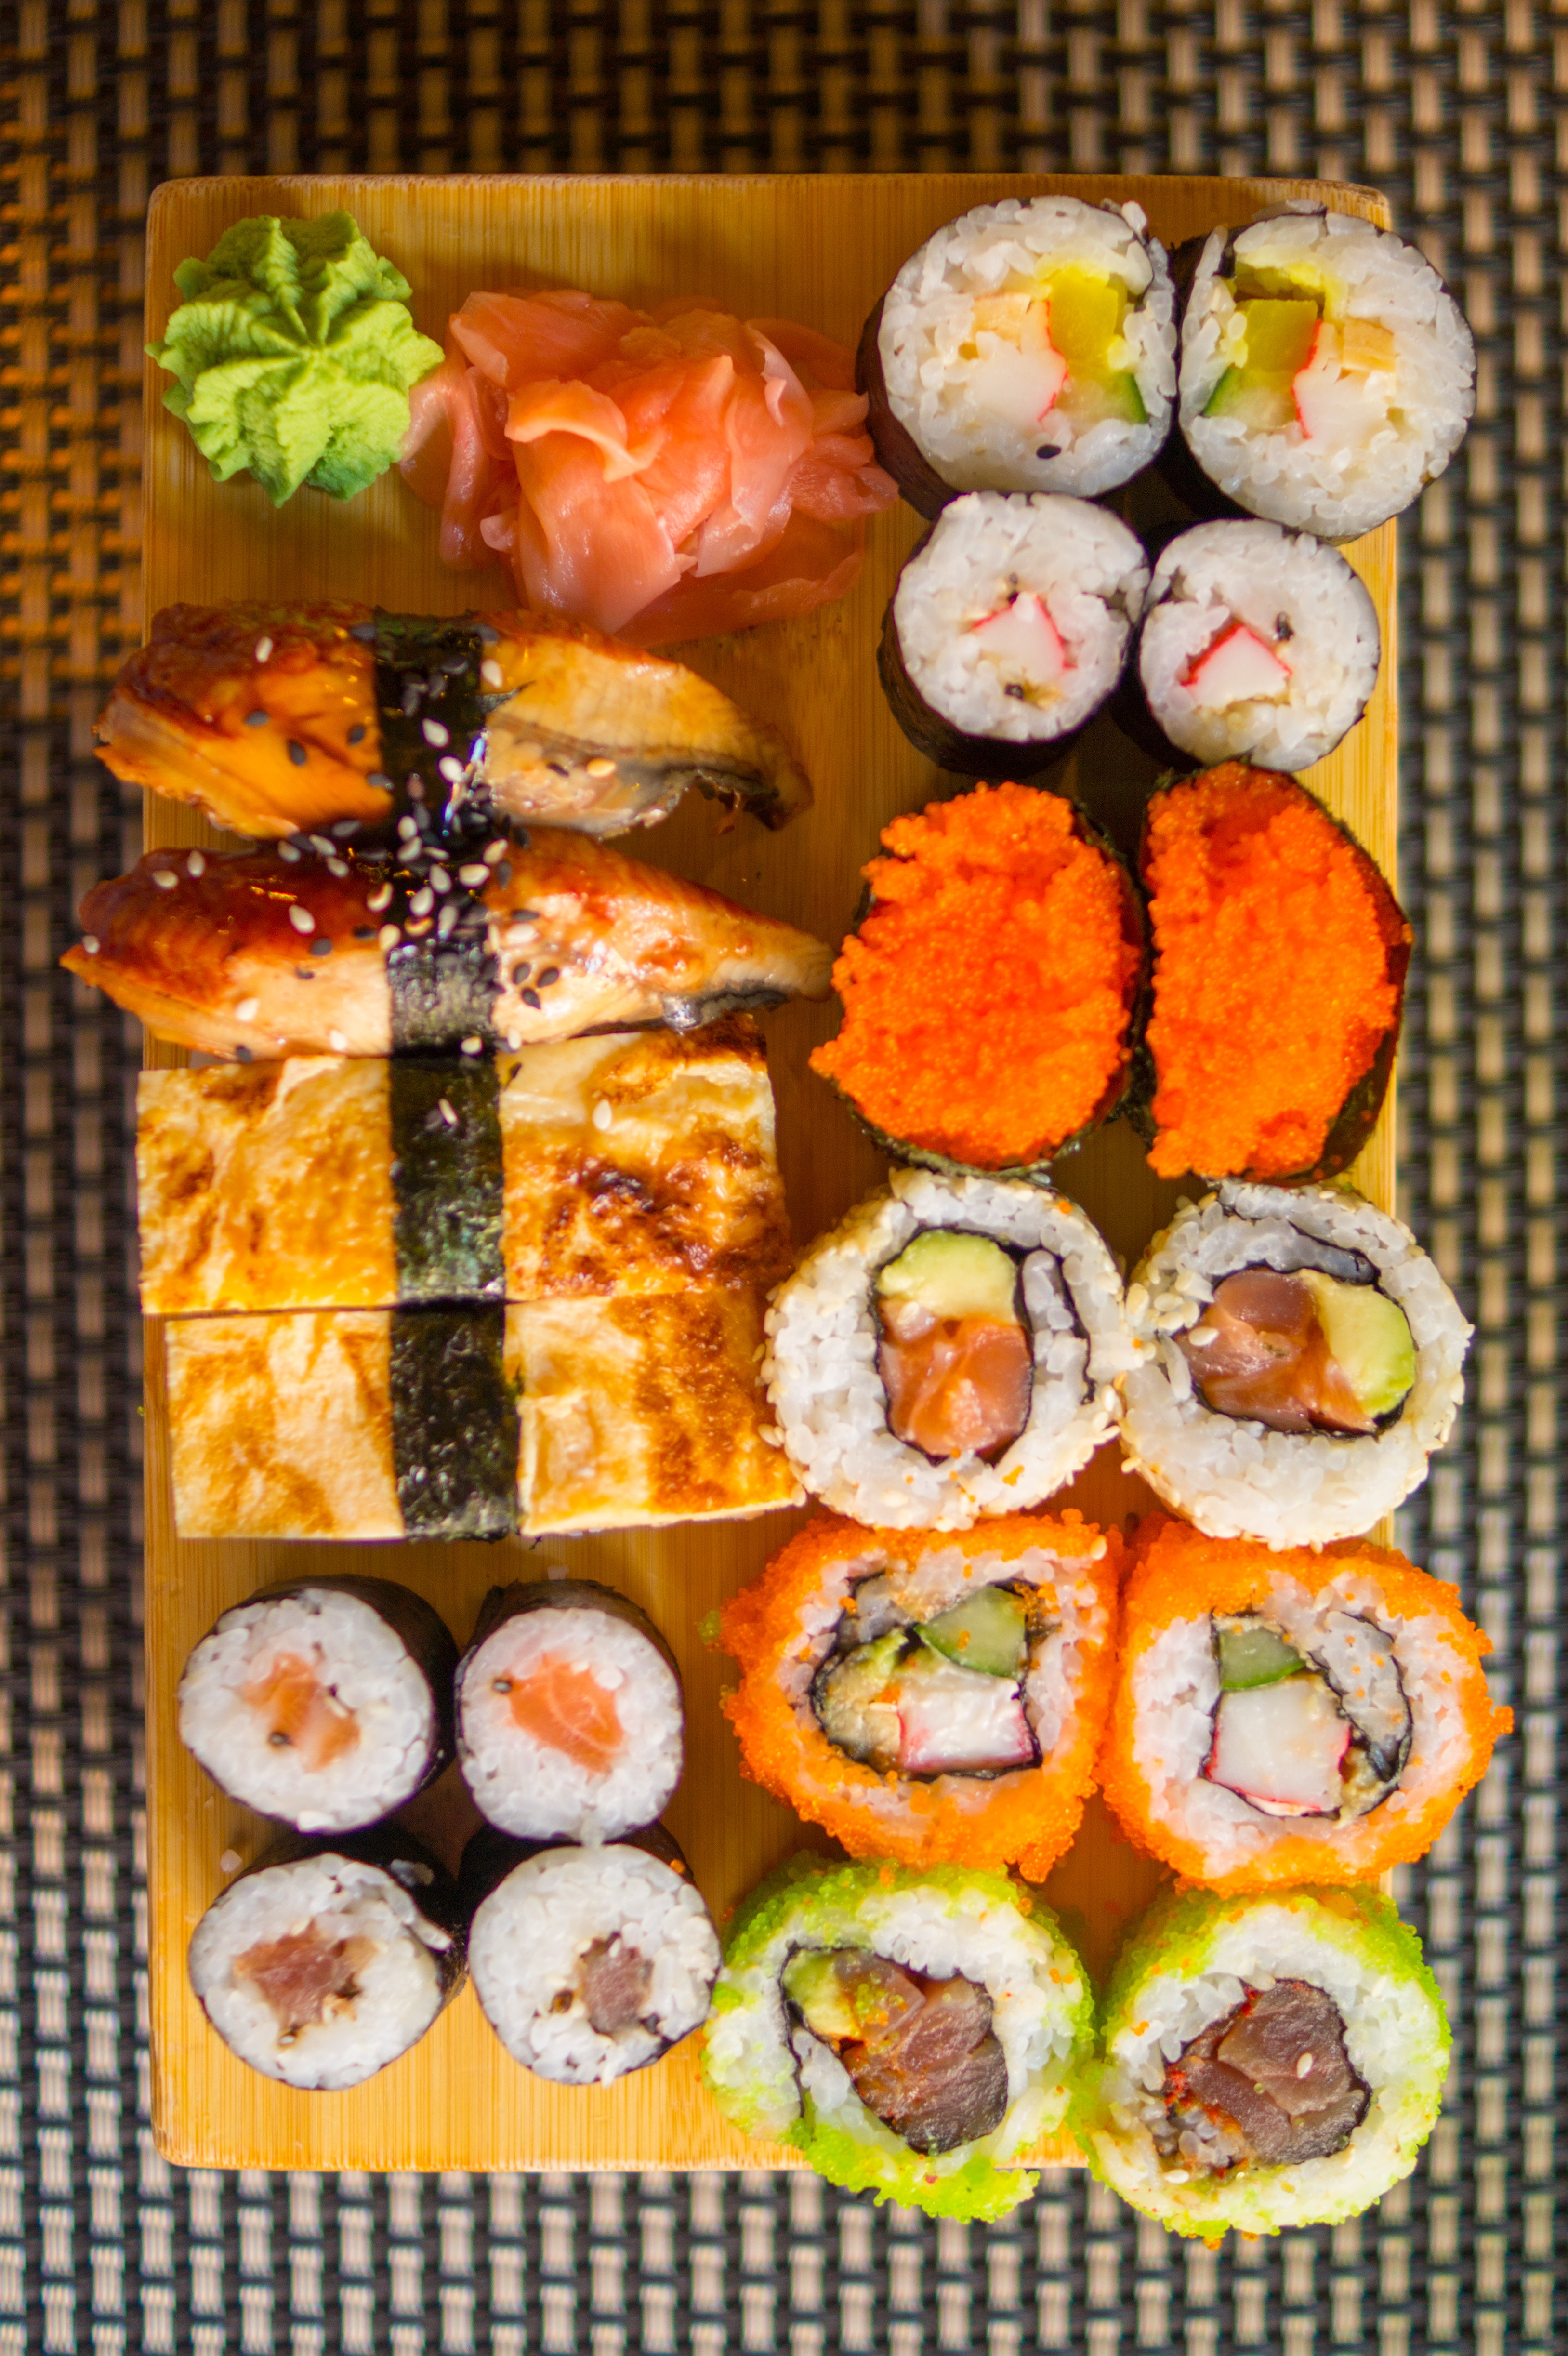 Na zdjęciu sfotografowane zostało typowe japońskie jedzenie czyli sushi.Na prostokątnym żółtym talerzu ułożone są 4 kolumny przysmakó zrobionych z ryżu i ryb. Większość ma kształt okrągłego koreczko z kropką w innym kolorze na środku. Jednak na talerzu możemy zauważyć również jasnozielony kleks kremu, podłużne i kwadratowe zakąski. Całość wygląda kolorowo.